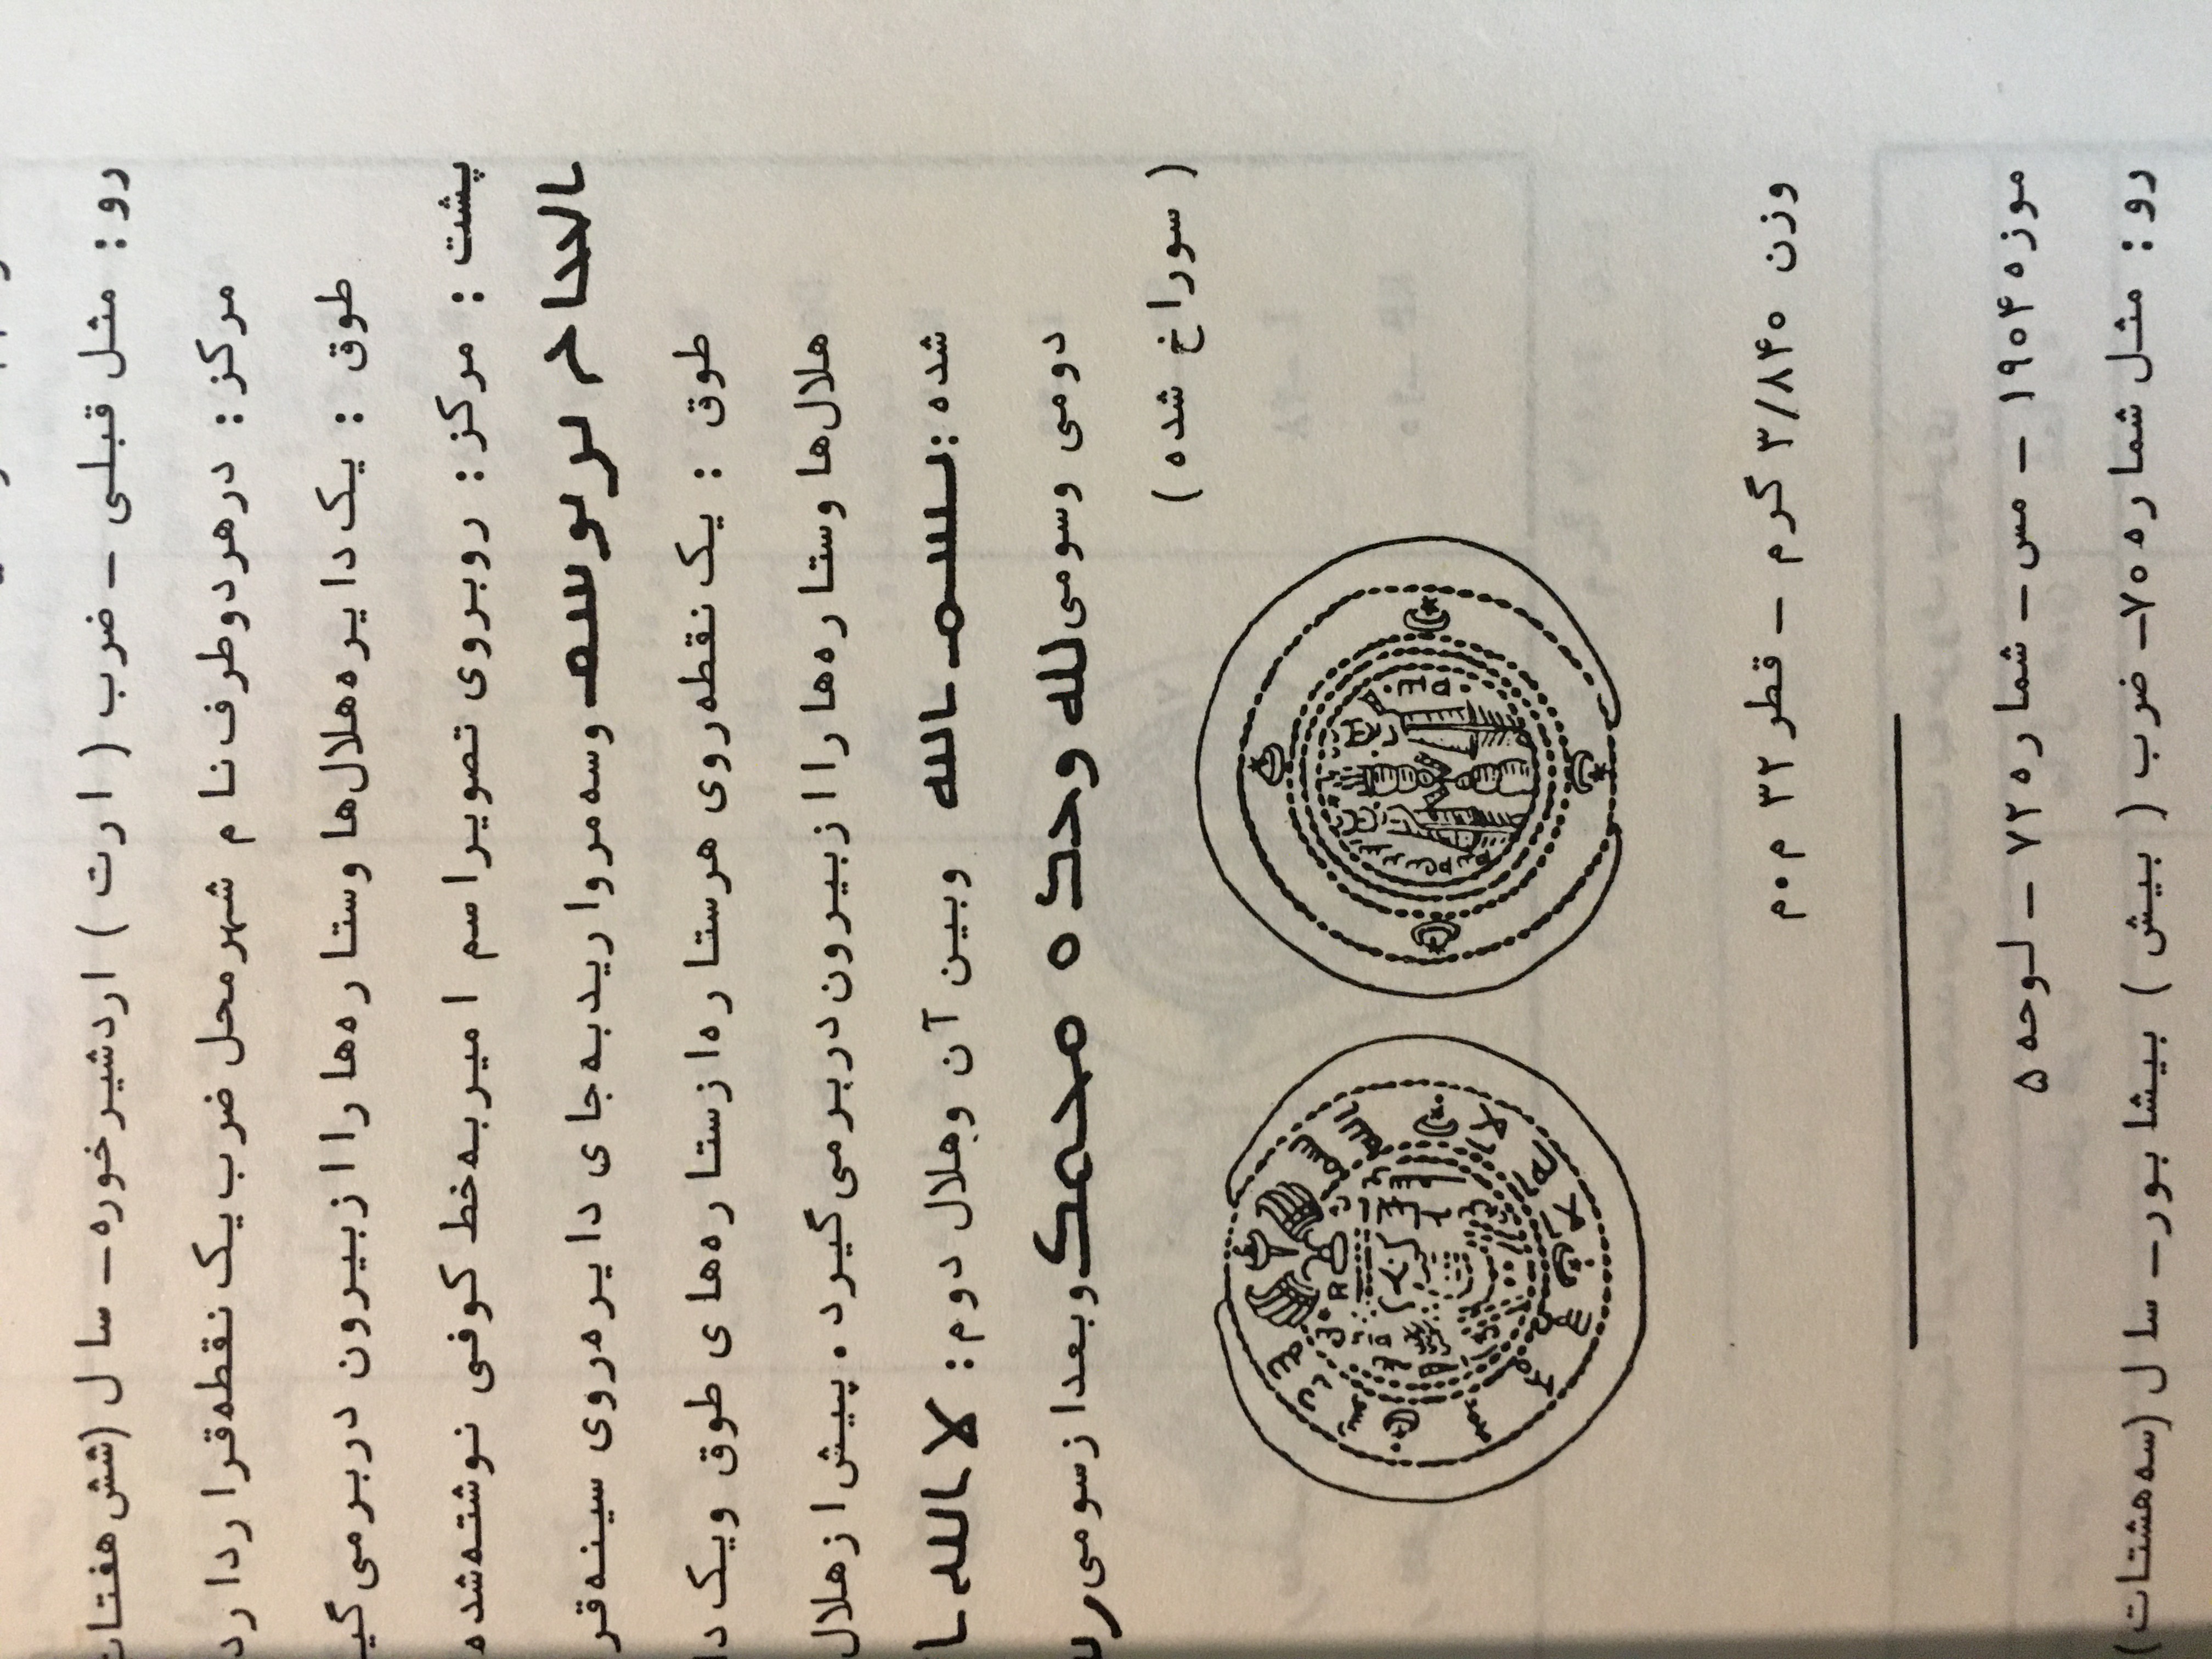 کتاب قدیمی و کمیاب  درهم های عرب ساسانی آموزش شناخت سکه های ساسانی